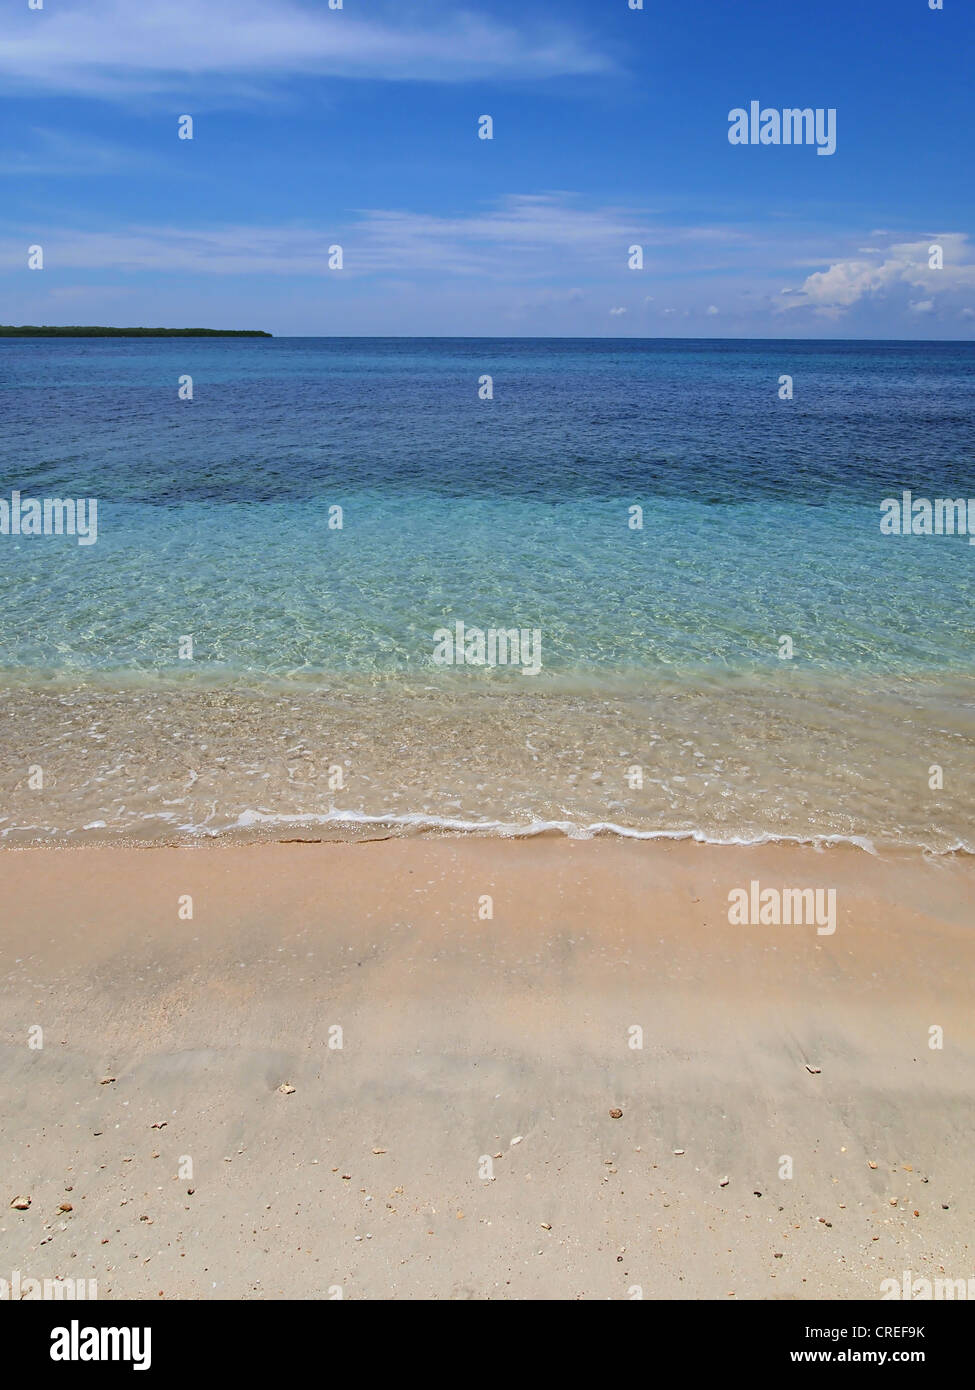 Spiaggia sabbiosa tropicale con chiare e calme acque del mare dei Caraibi, Panama, Zapatilla cayes Foto Stock